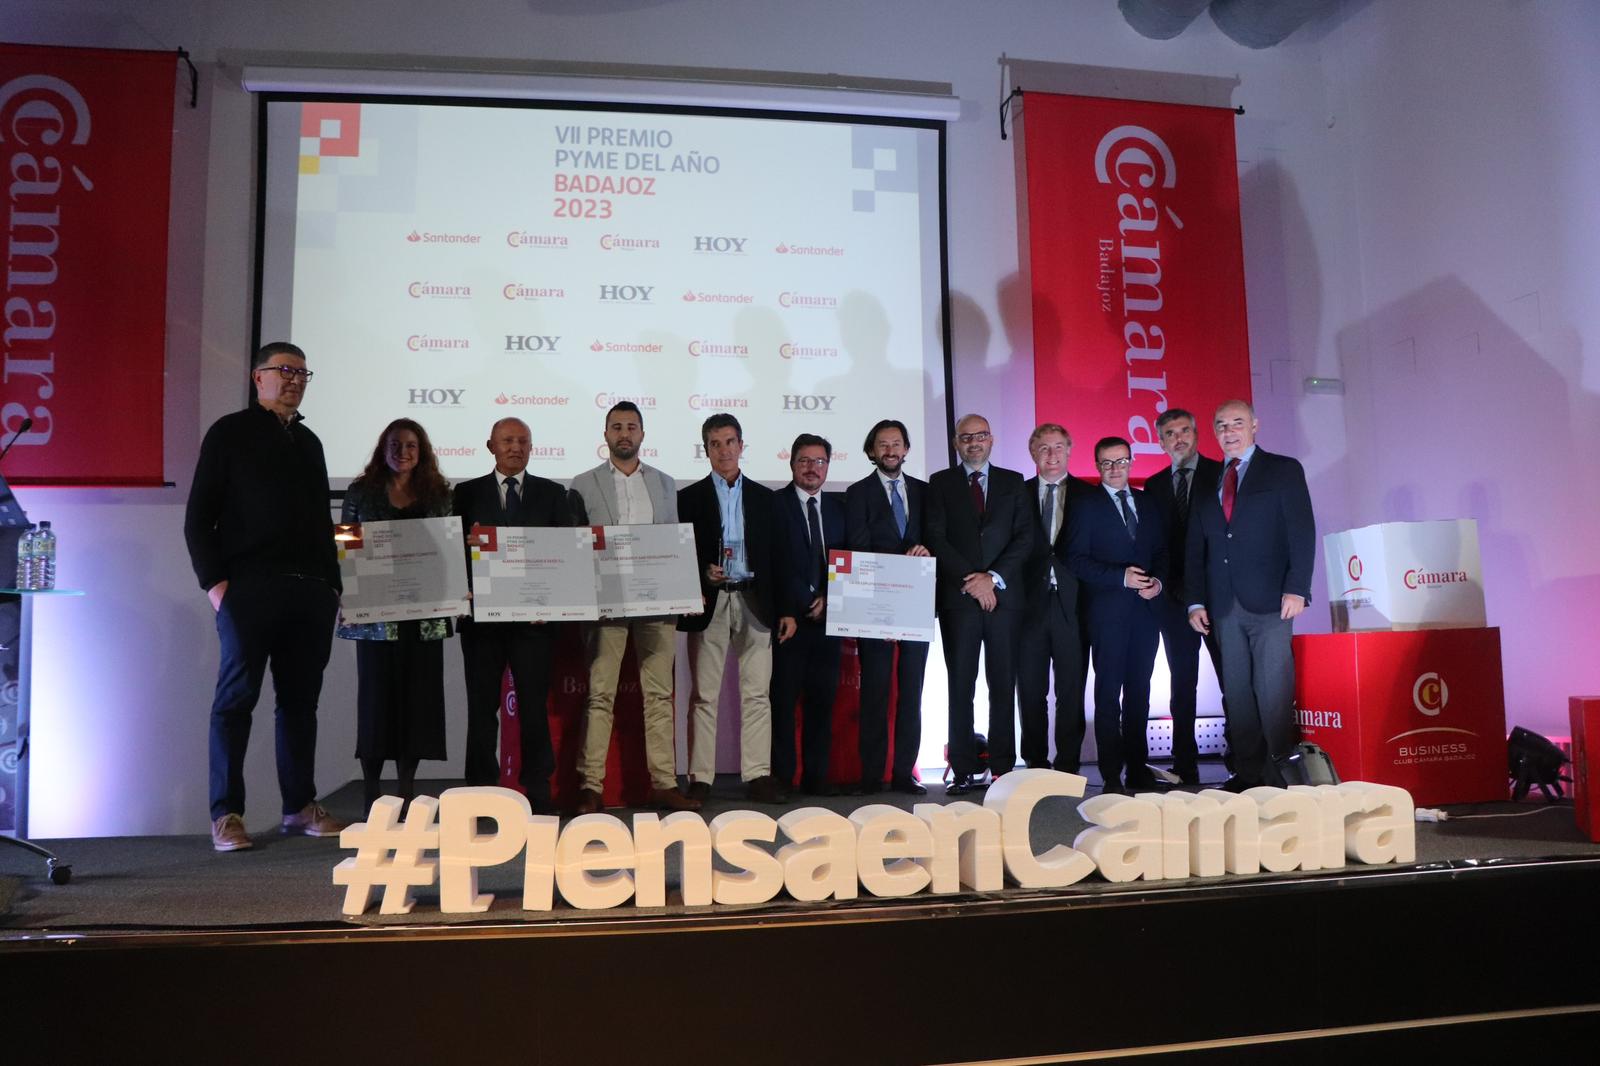 Imagen del artículo Santamaría apuesta por el valor de las pequeñas y medianas empresas con motivo de la entrega Premio Pyme del Año de la Cámara de Comercio